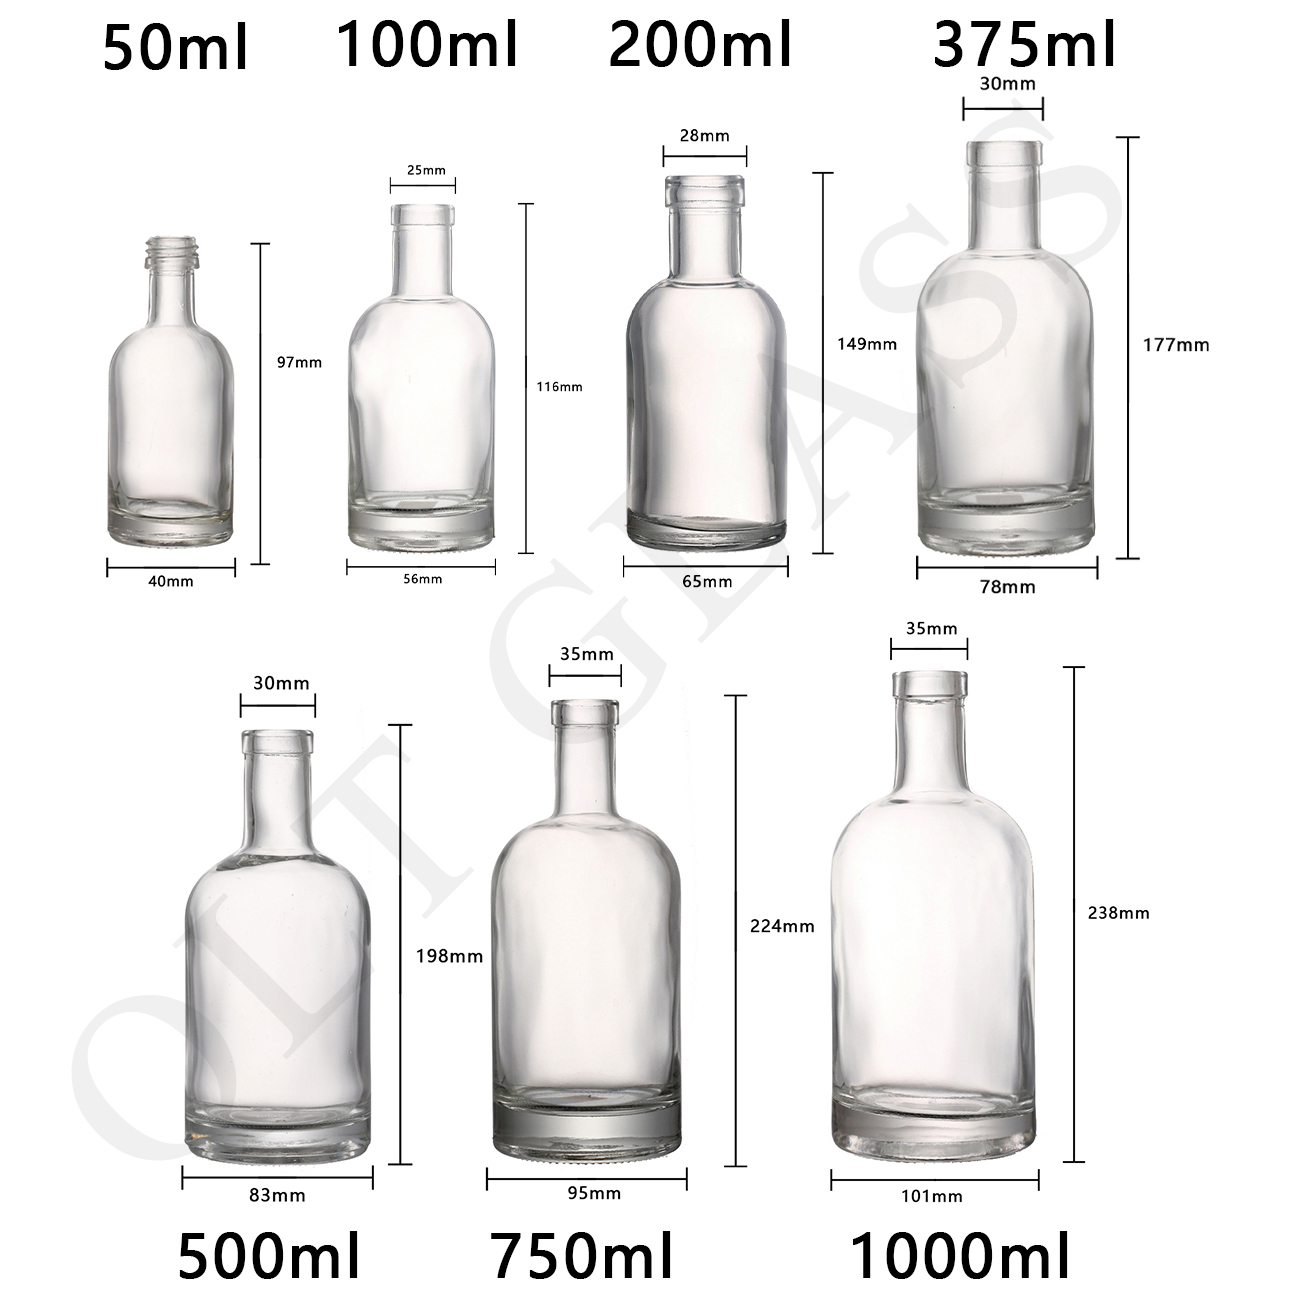 Glass-liquor bottle